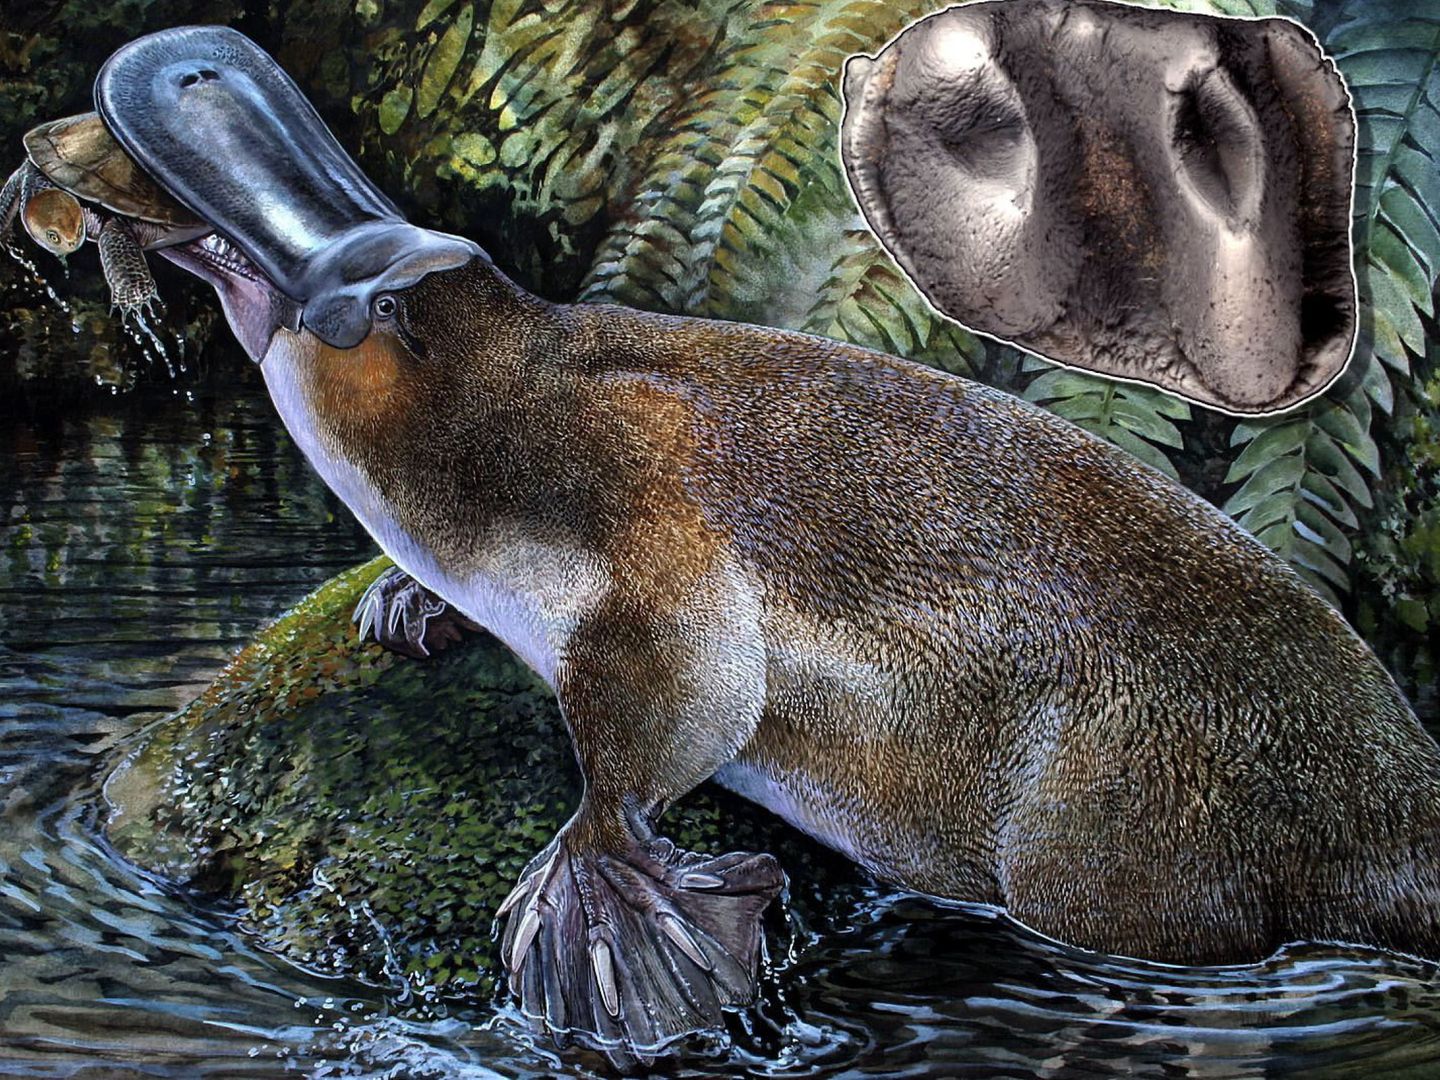 El ornitorrinco perdió sus dientes hace millones de años